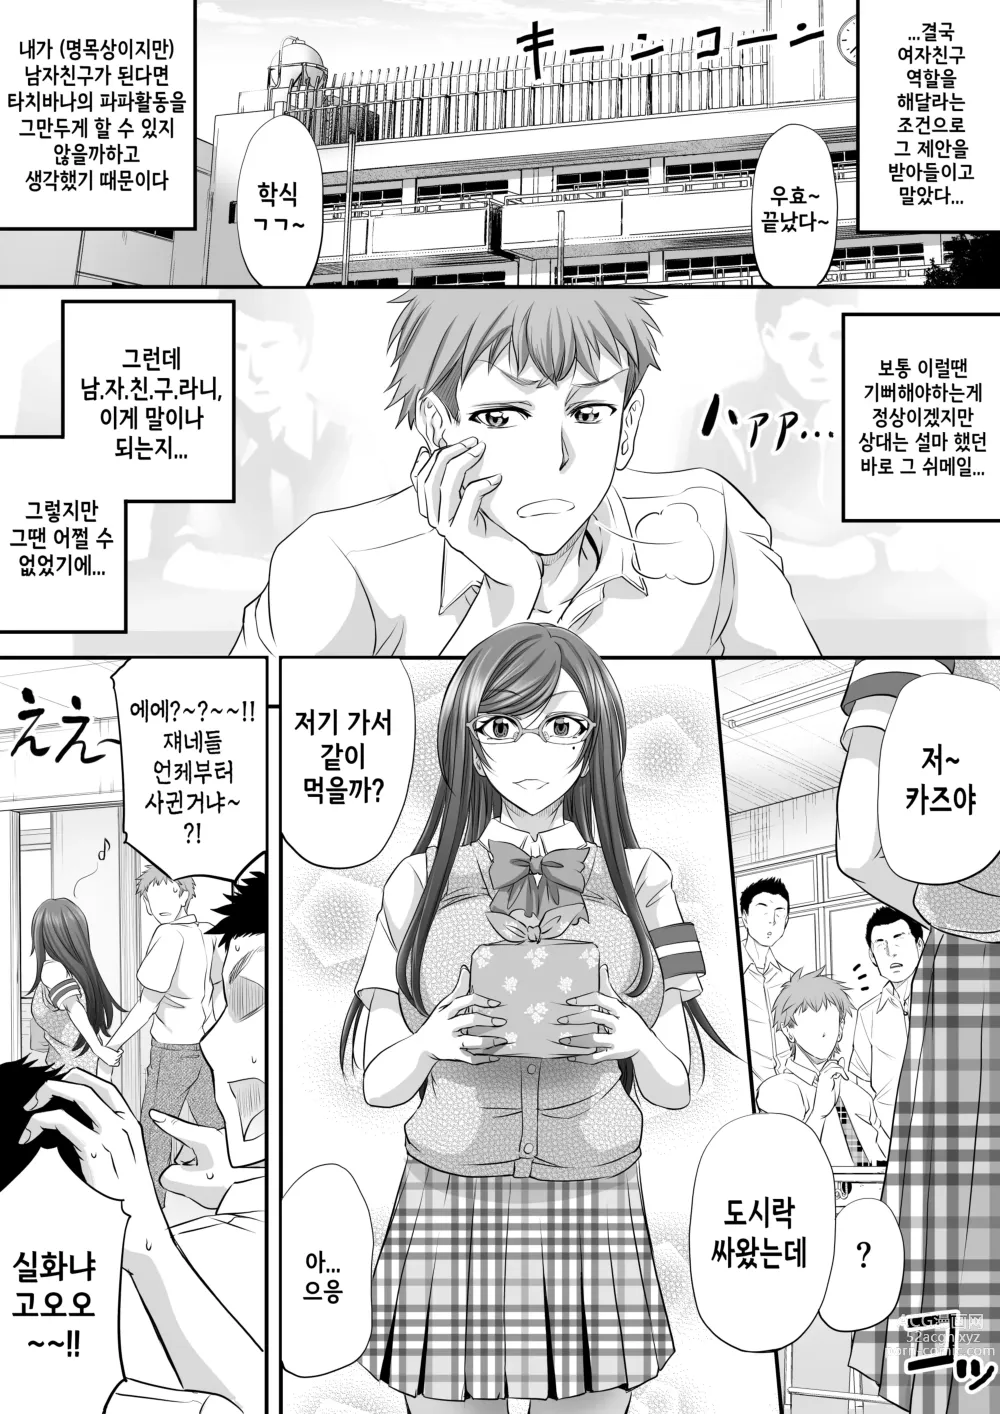 Page 16 of doujinshi  파파활동 쉬메일이 여자친구가 되기까지